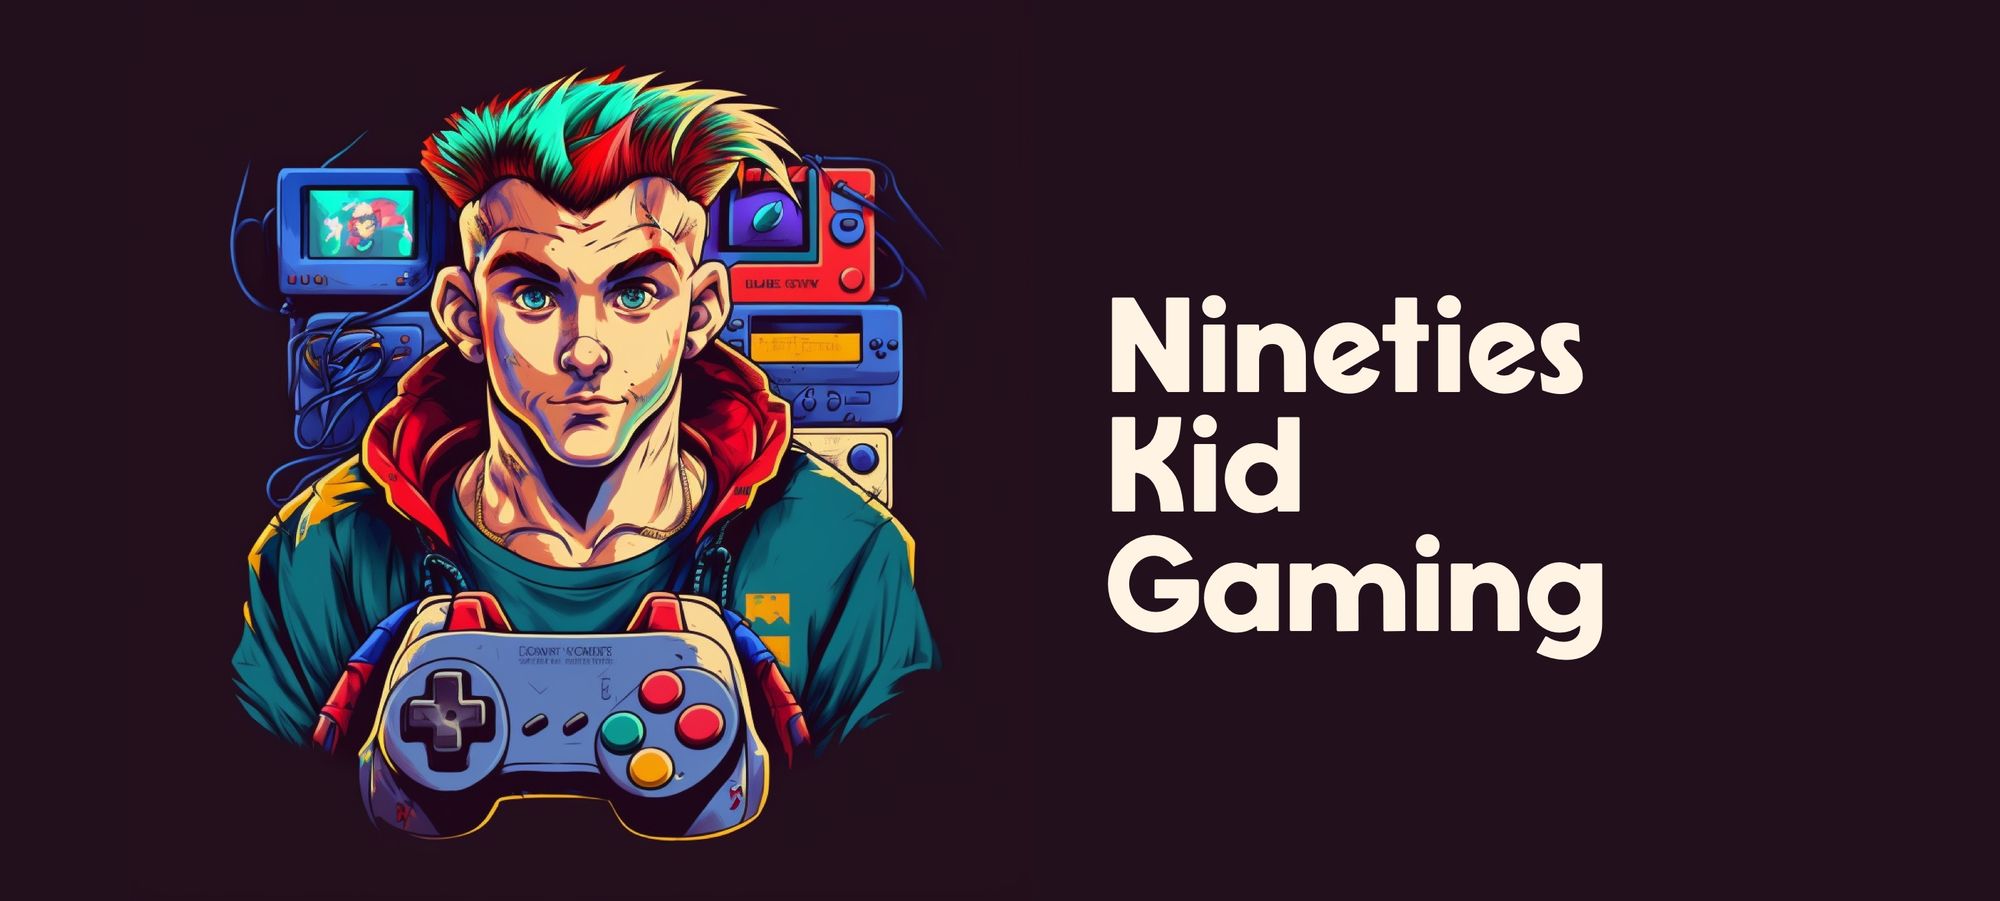 Introducing Nineties Kid Gaming!